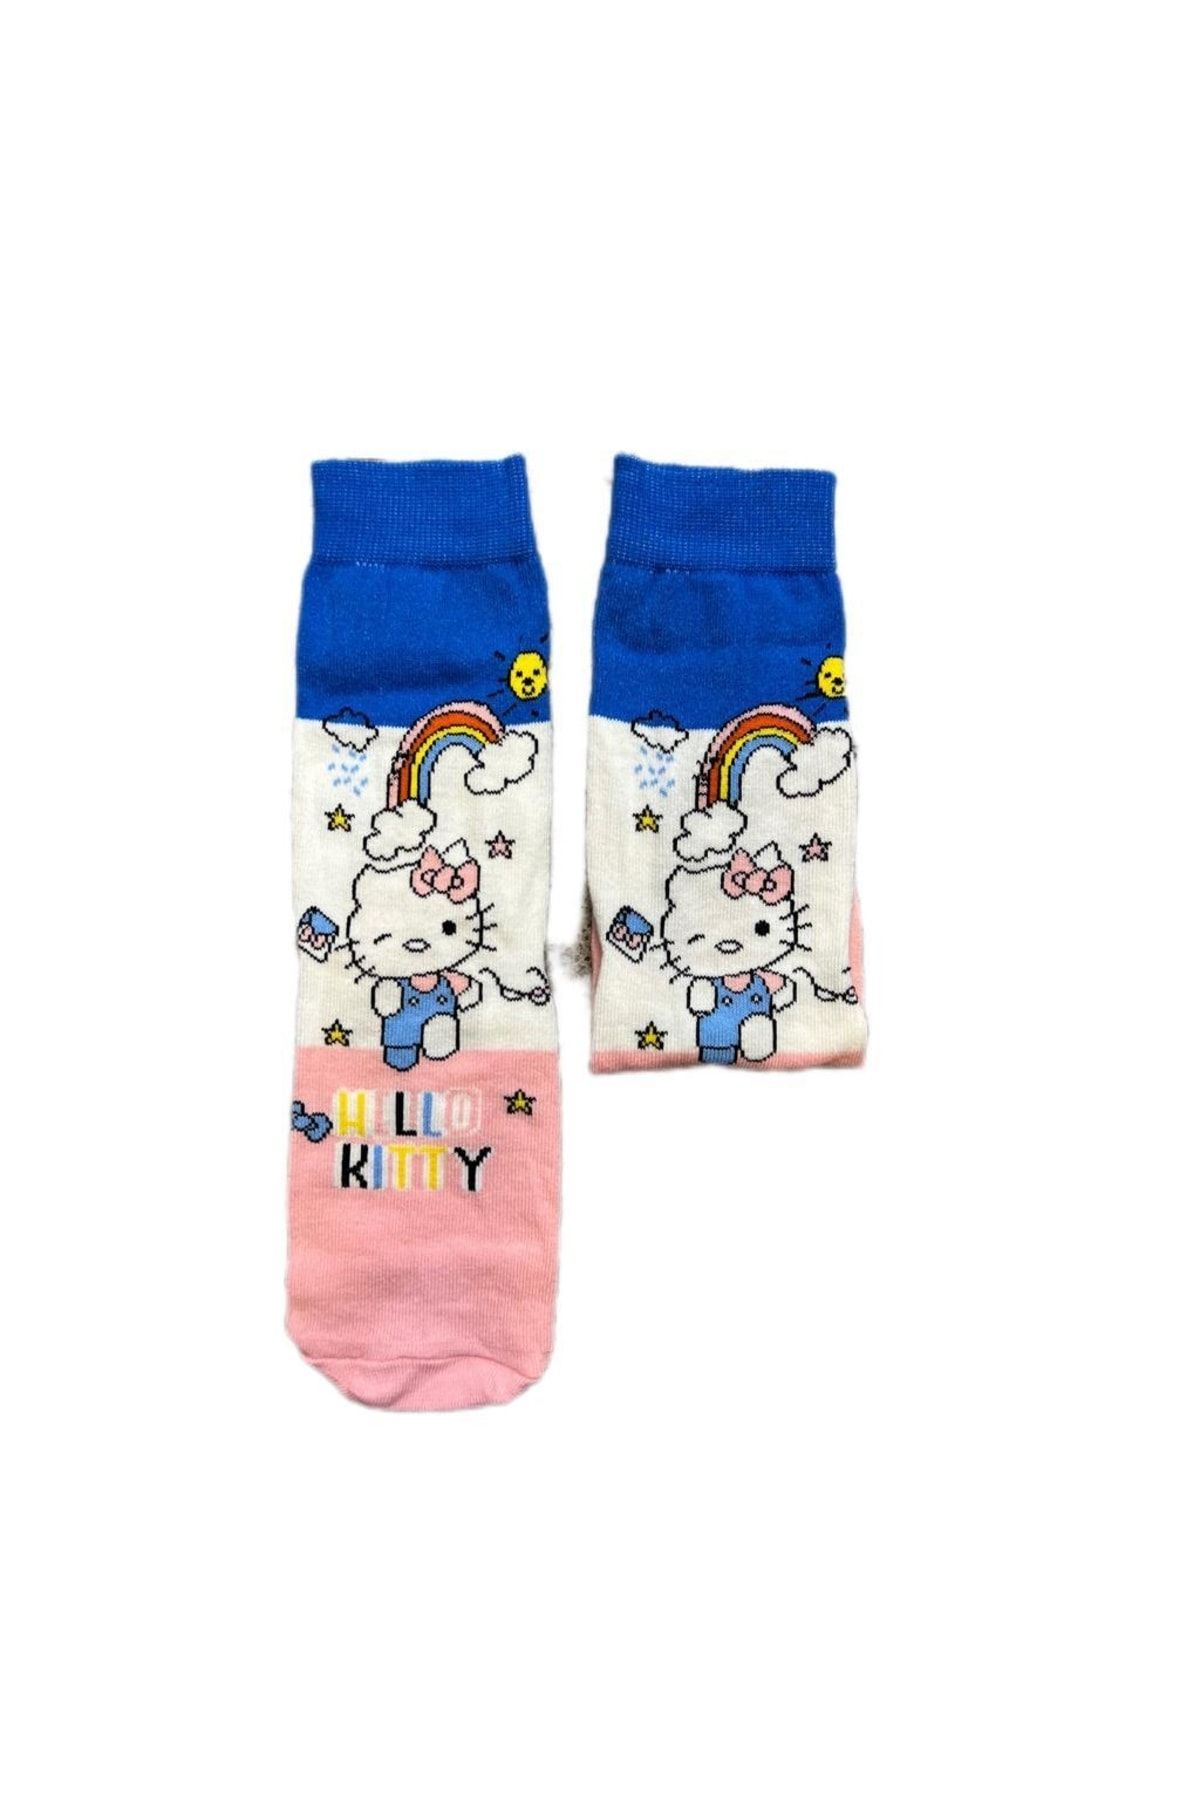 Kuzgunshop Hello Kitty Gökkuşağı Şık Unisex Çorap